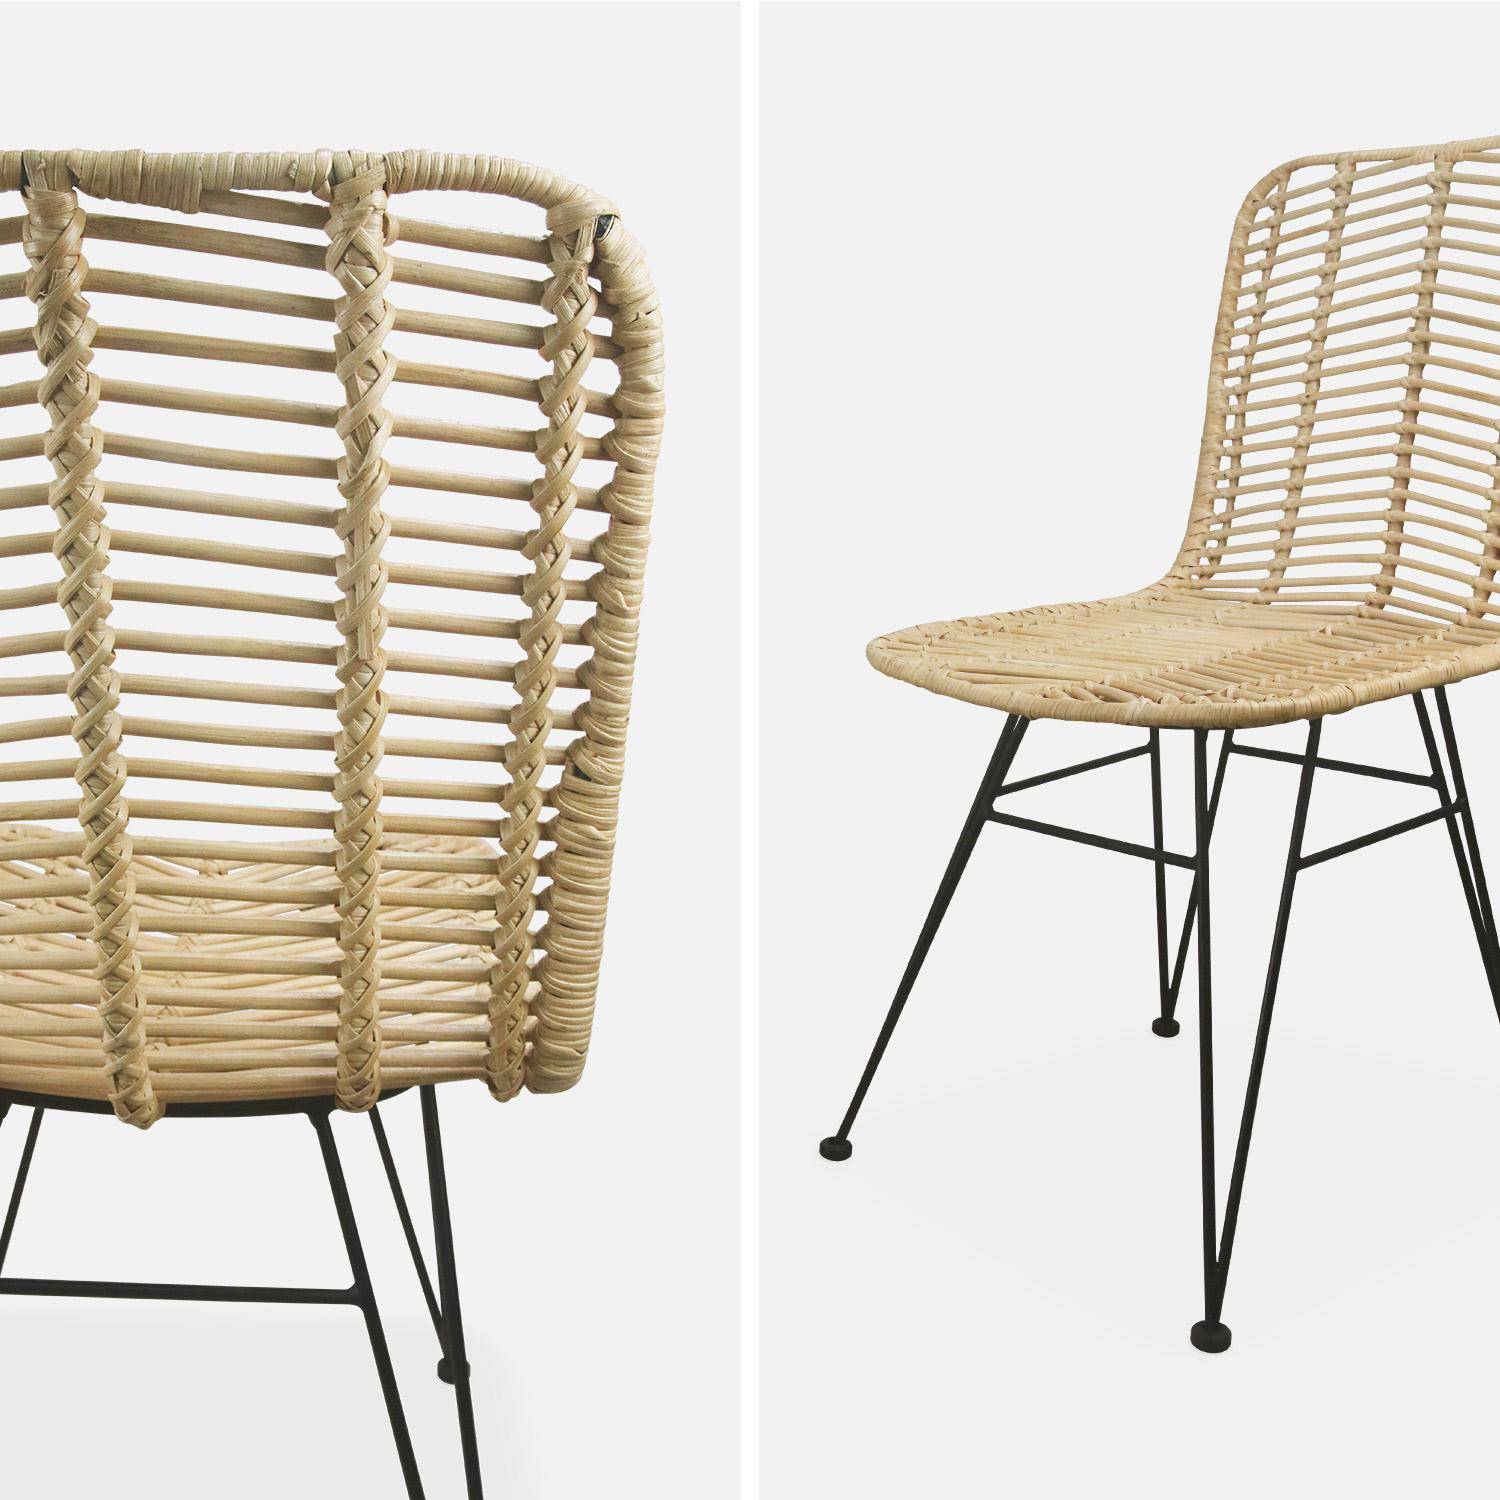 Dos sillas de ratán natural y metal, cojines beige - Cahya,sweeek,Photo8